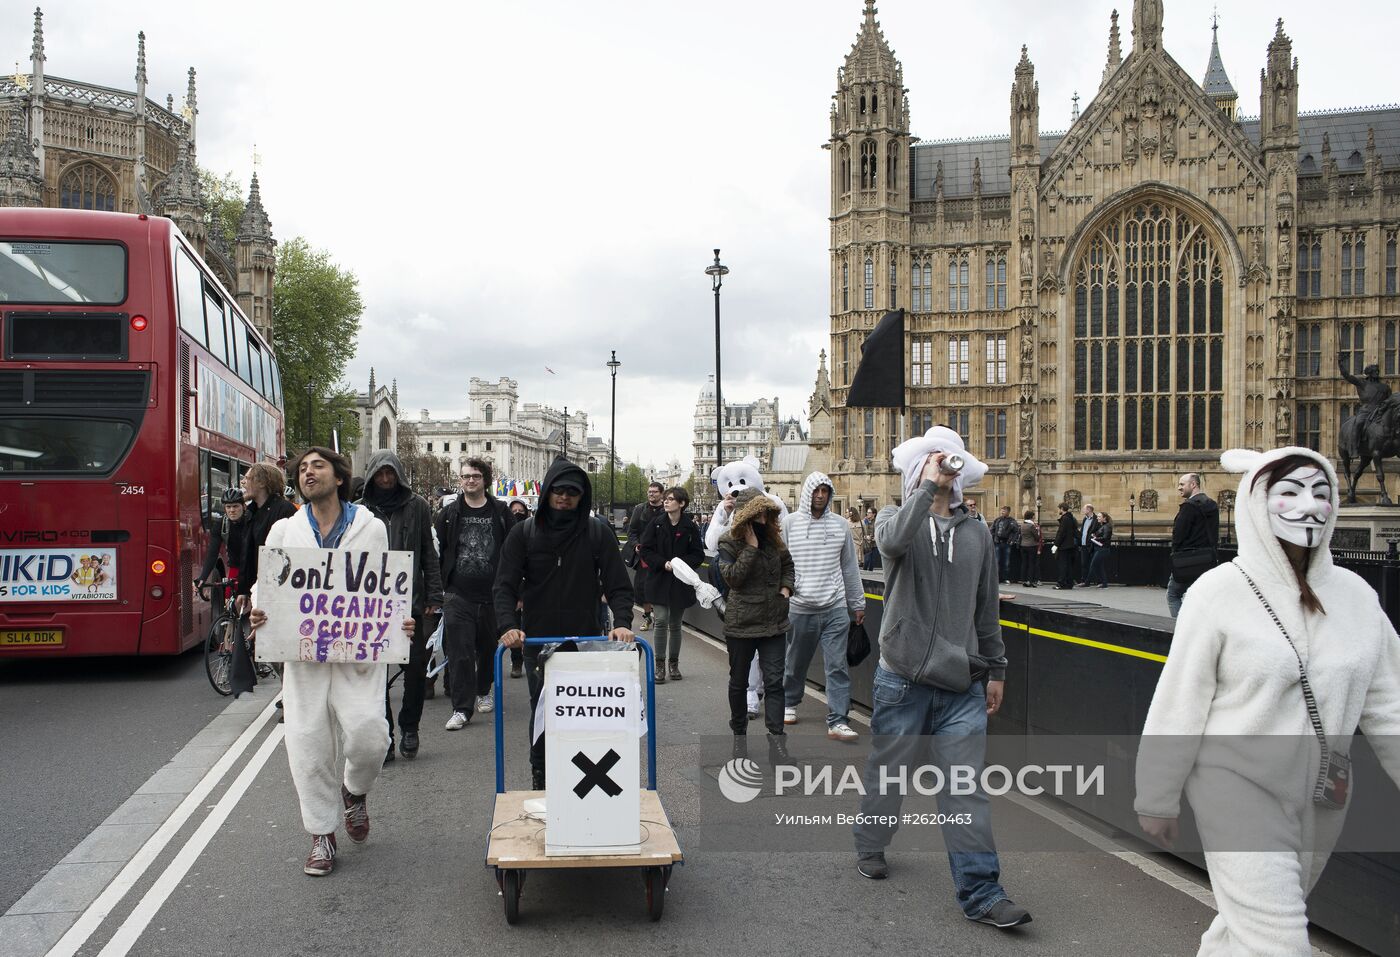 Акция "Occupy Democracy" в Лондоне